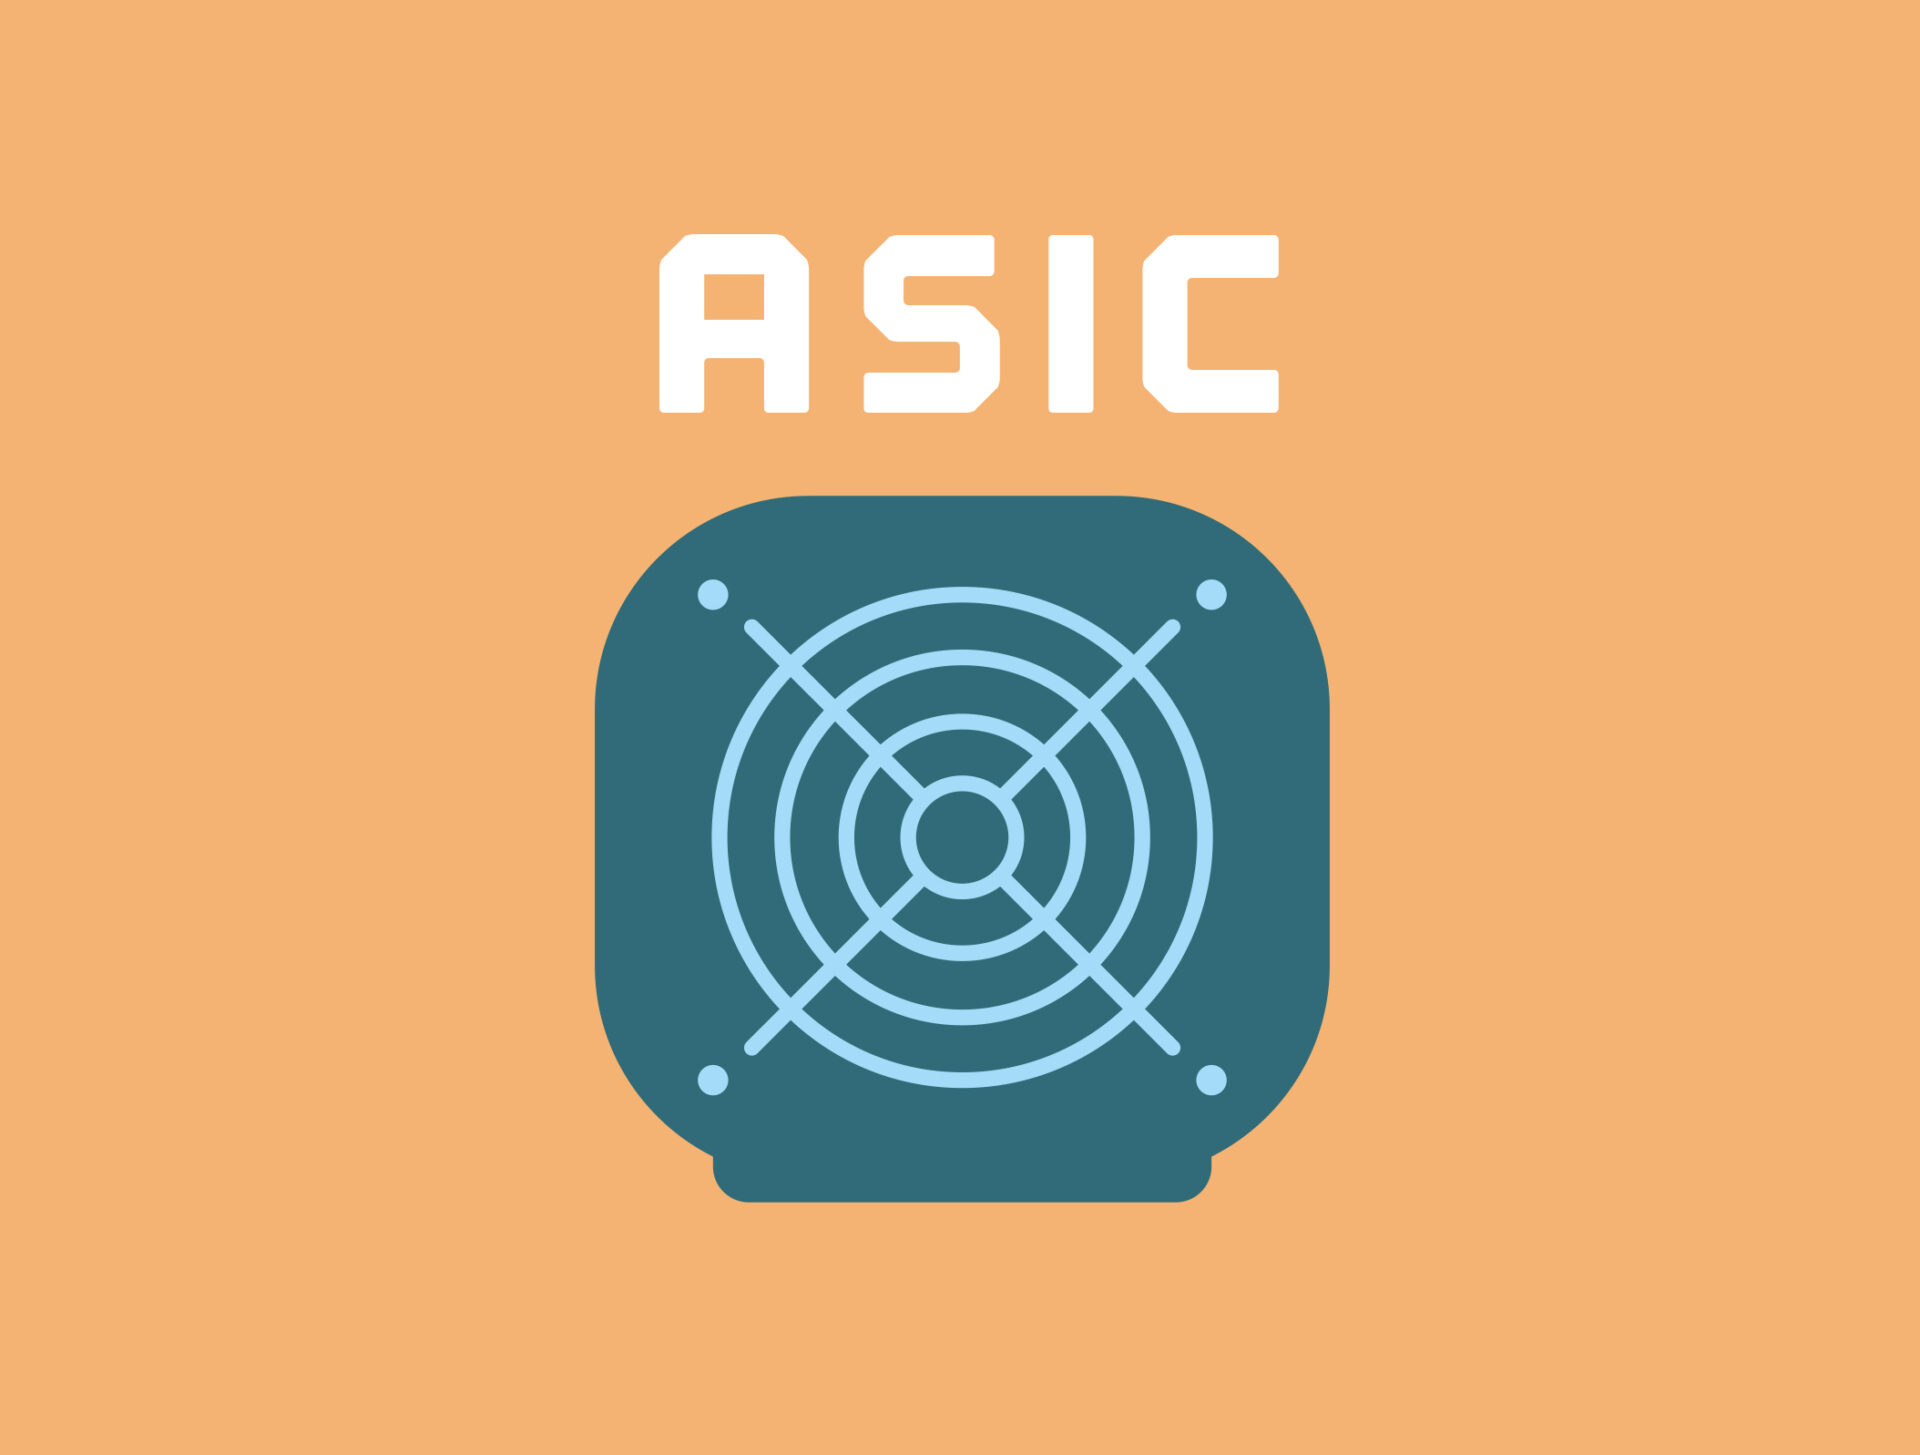 Miner ASIC - Asic miner - Asic miner litecoin